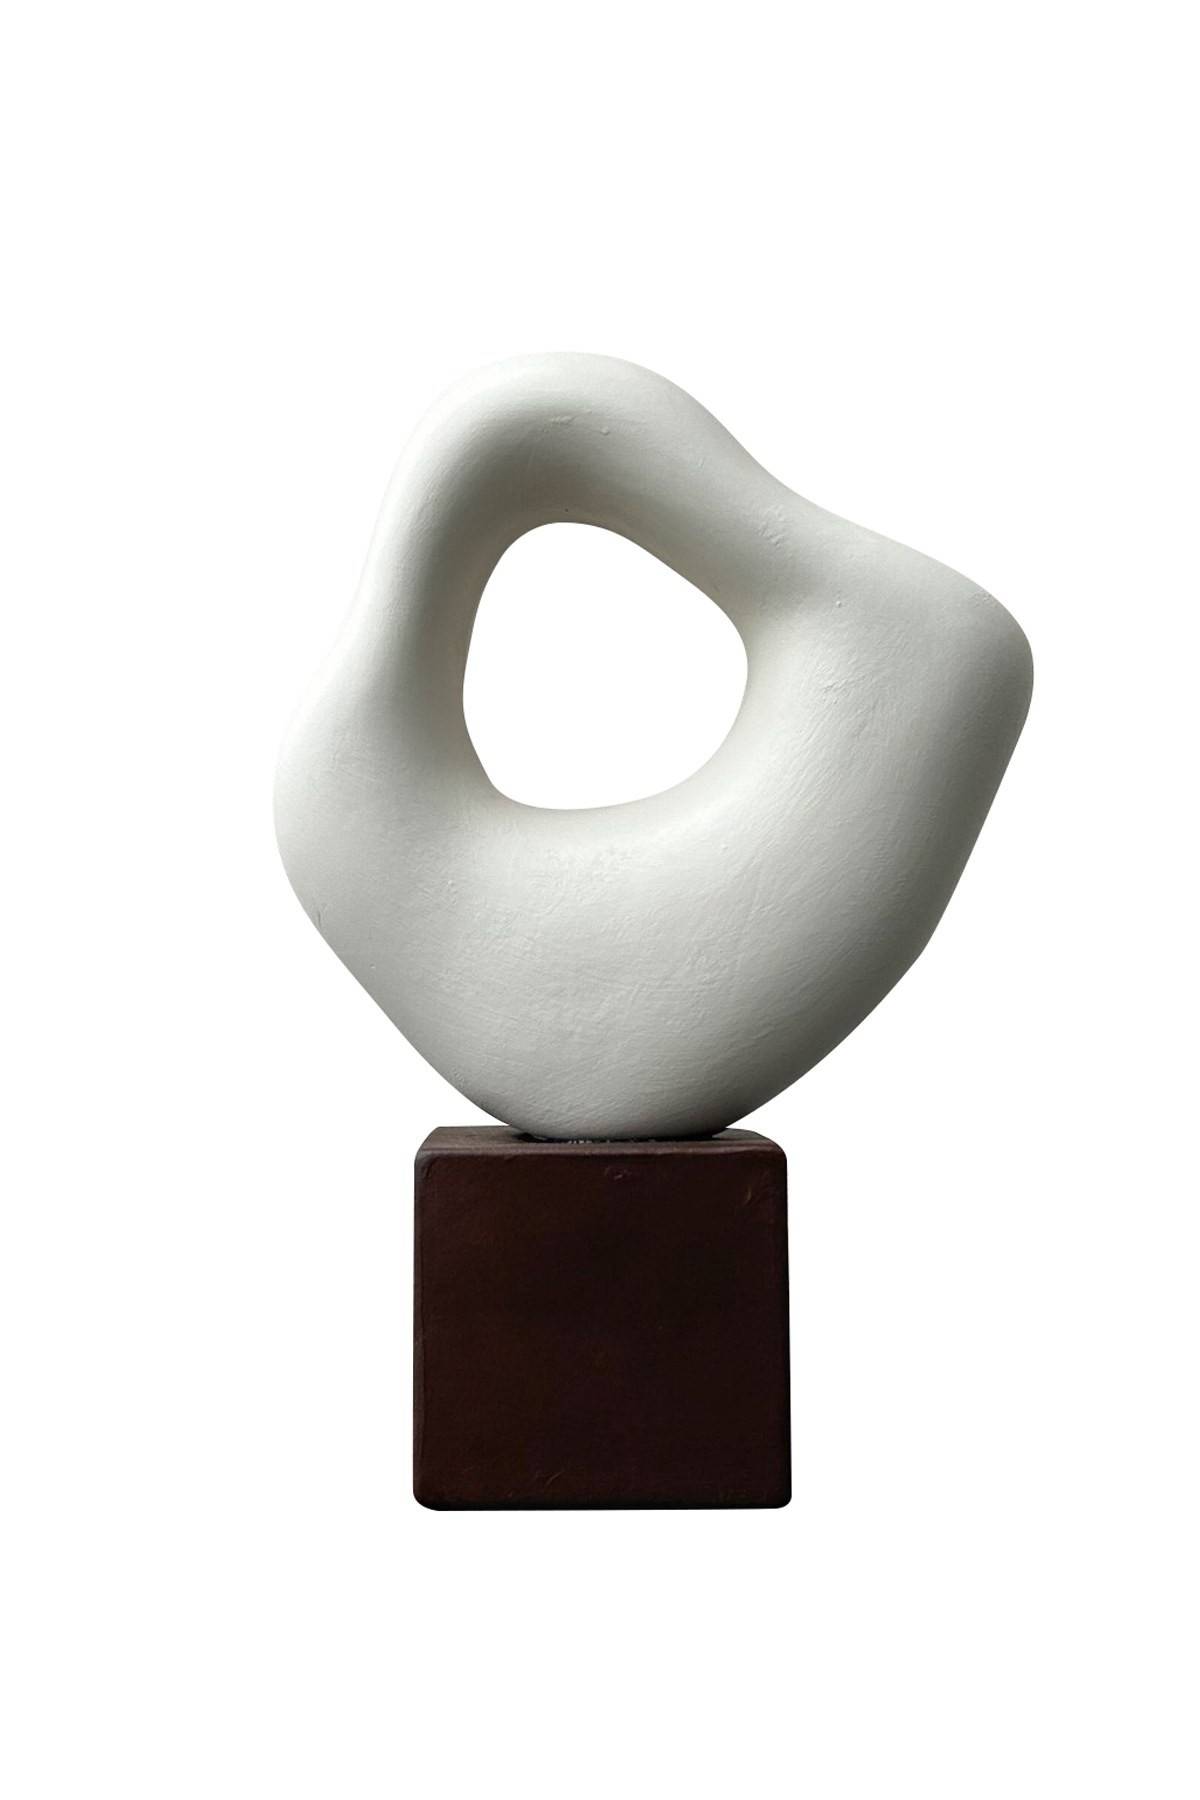 Escultura abstracta de interior Mizar L30xH30cm Cerámica Blanca